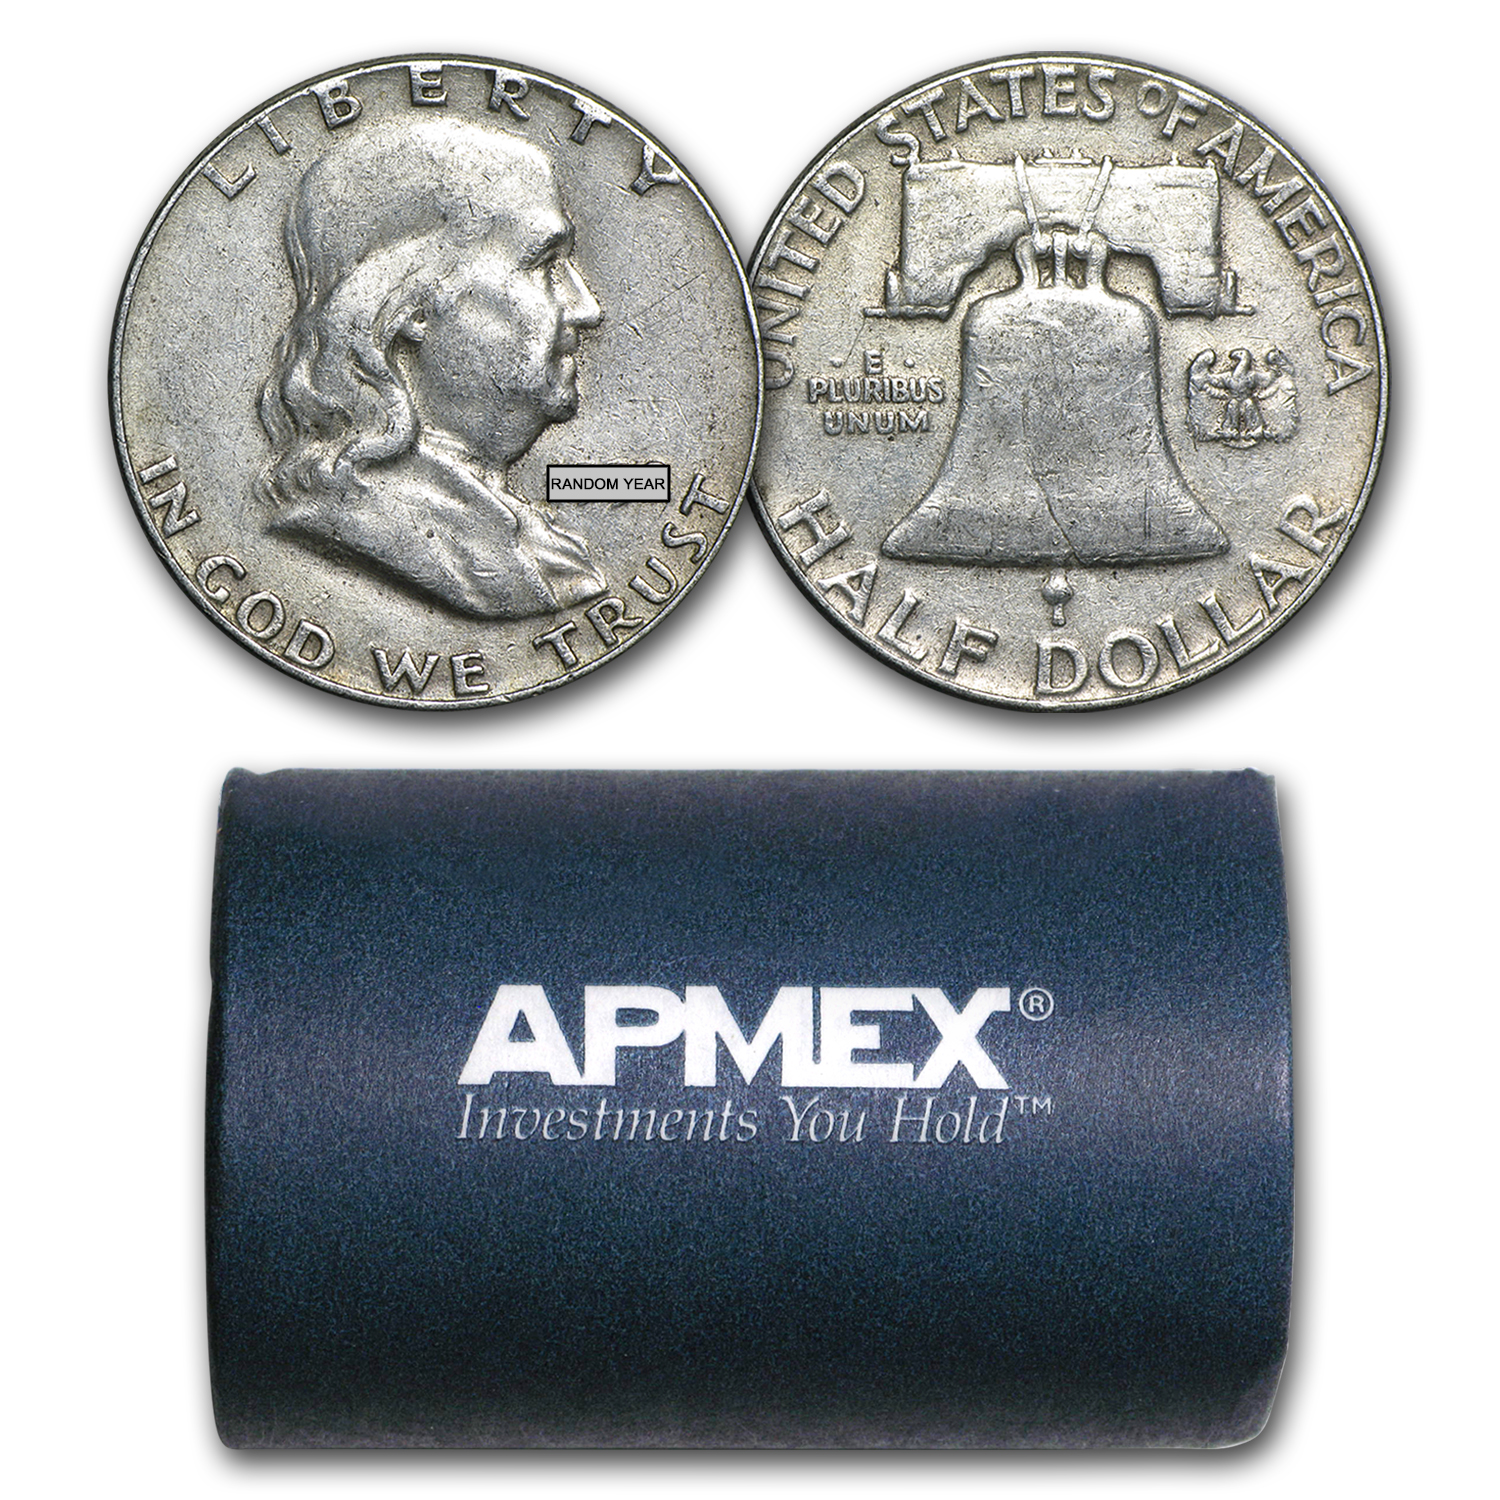 MAKE OFFER $5.00 Face Value Silver Ben Franklin Half Dollars Halves Junk Coins 